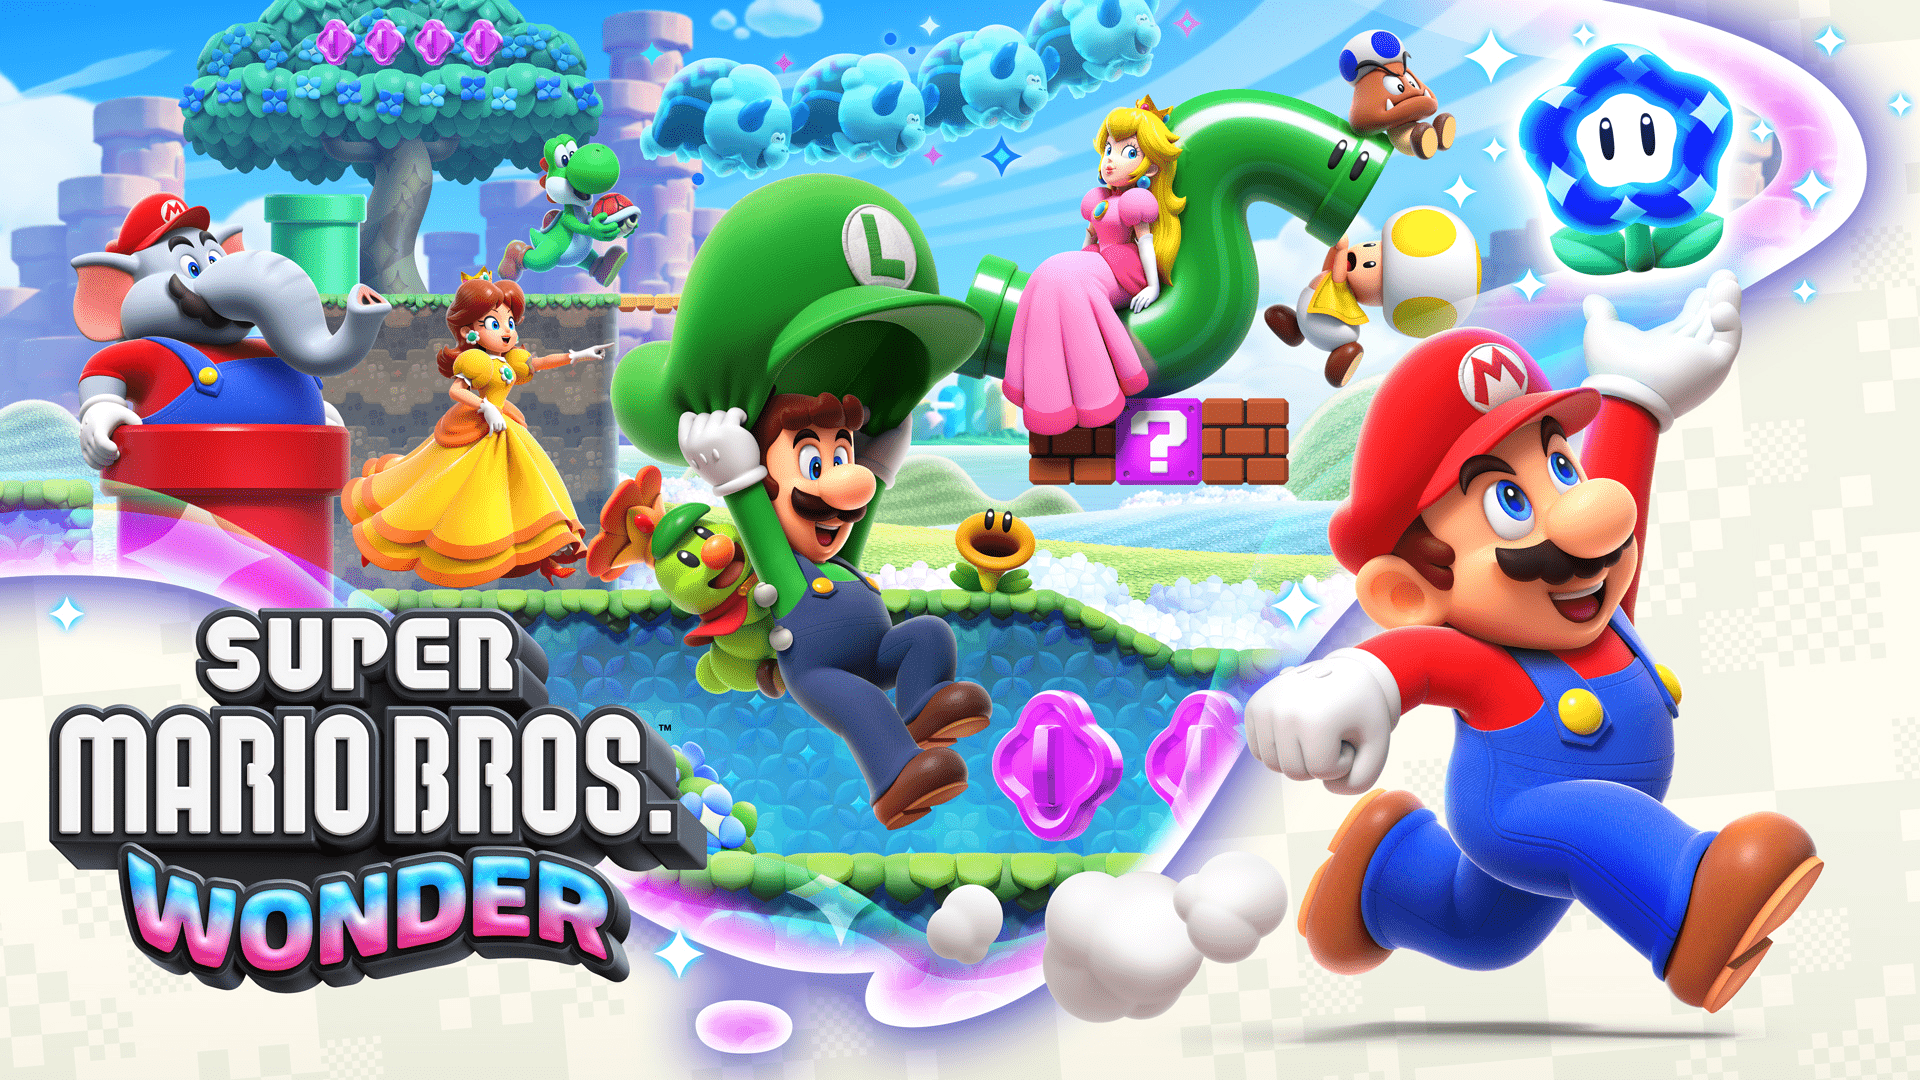 NV99, Os 10 melhores games do Mario, Sociedade Nerd